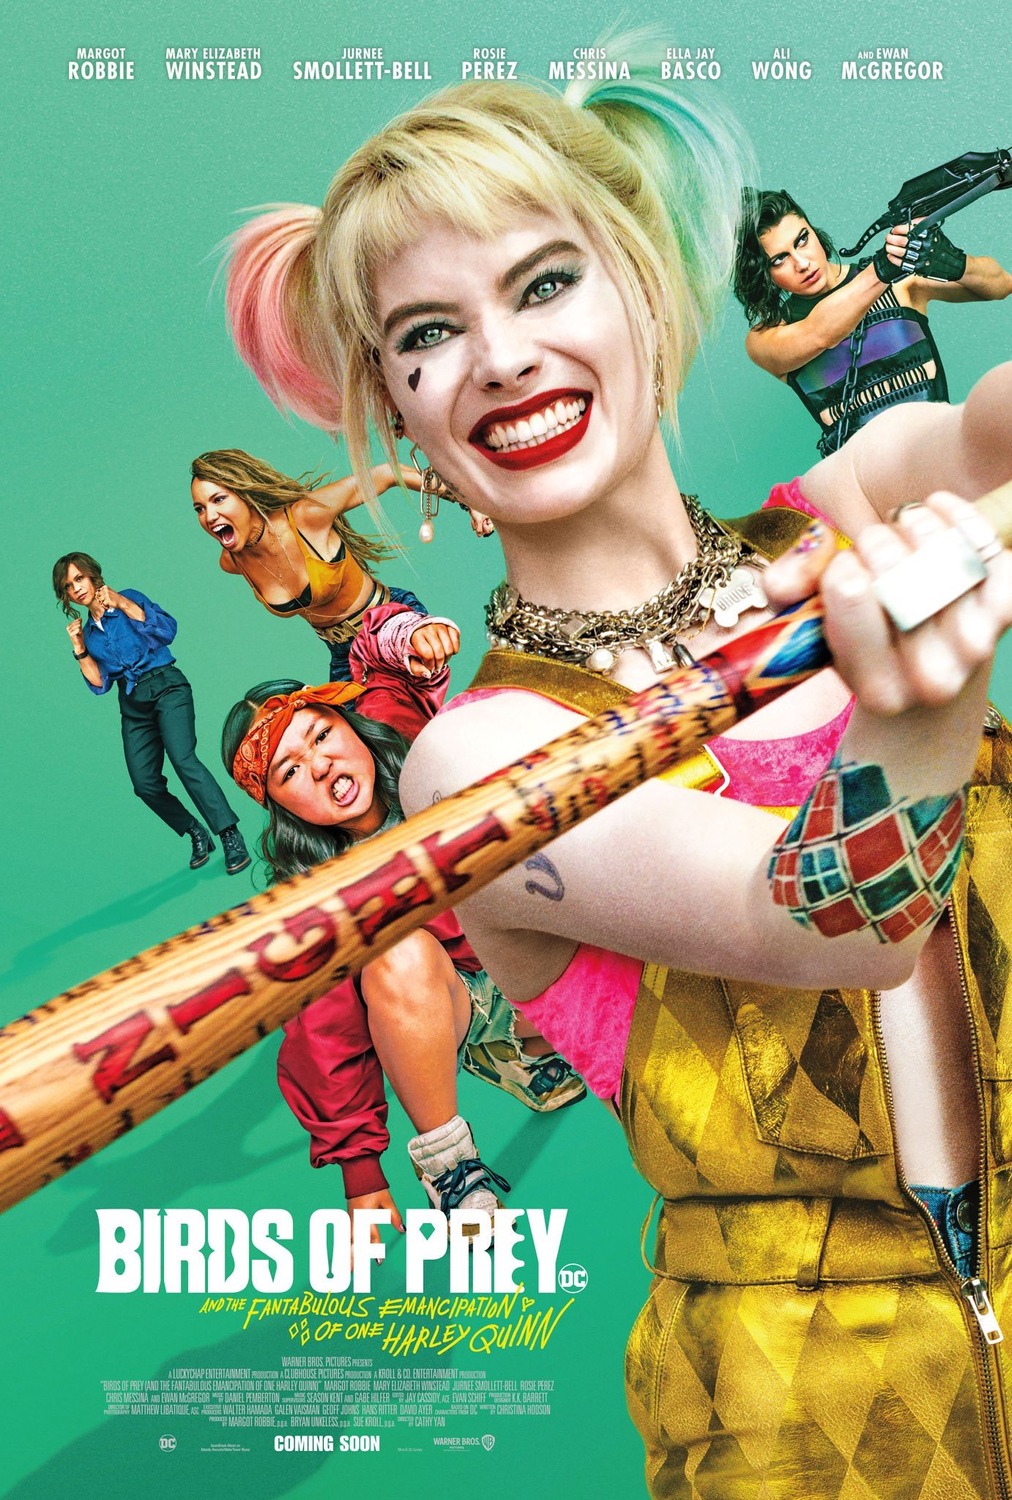 Harley Quinn Film - Birds of Prey